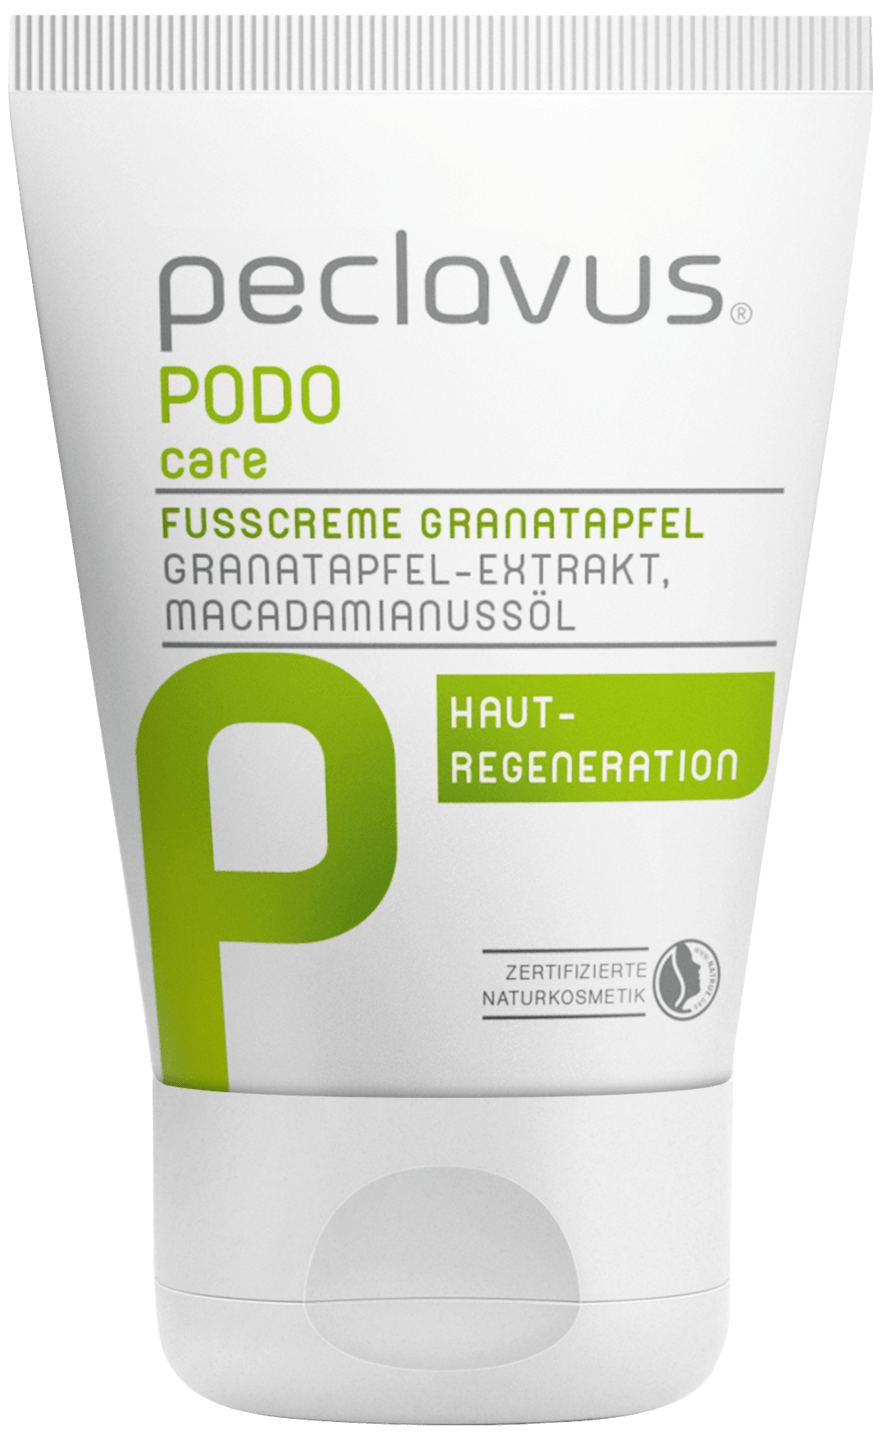 peclavus - Fußcreme Granatapfel, 30 ml